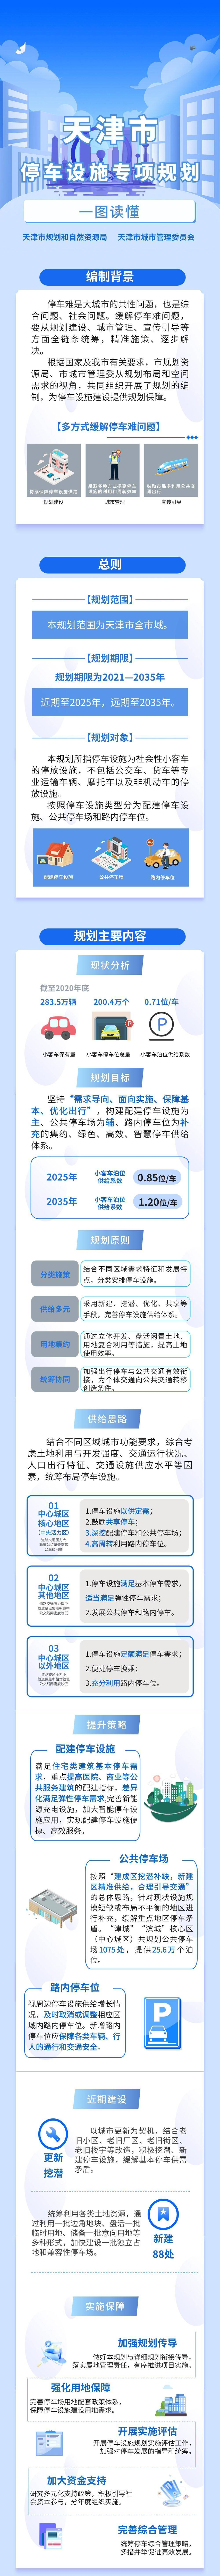 杭州小客车指标调控管理信息系统(杭州小客车指标调控管理信息系统申请)